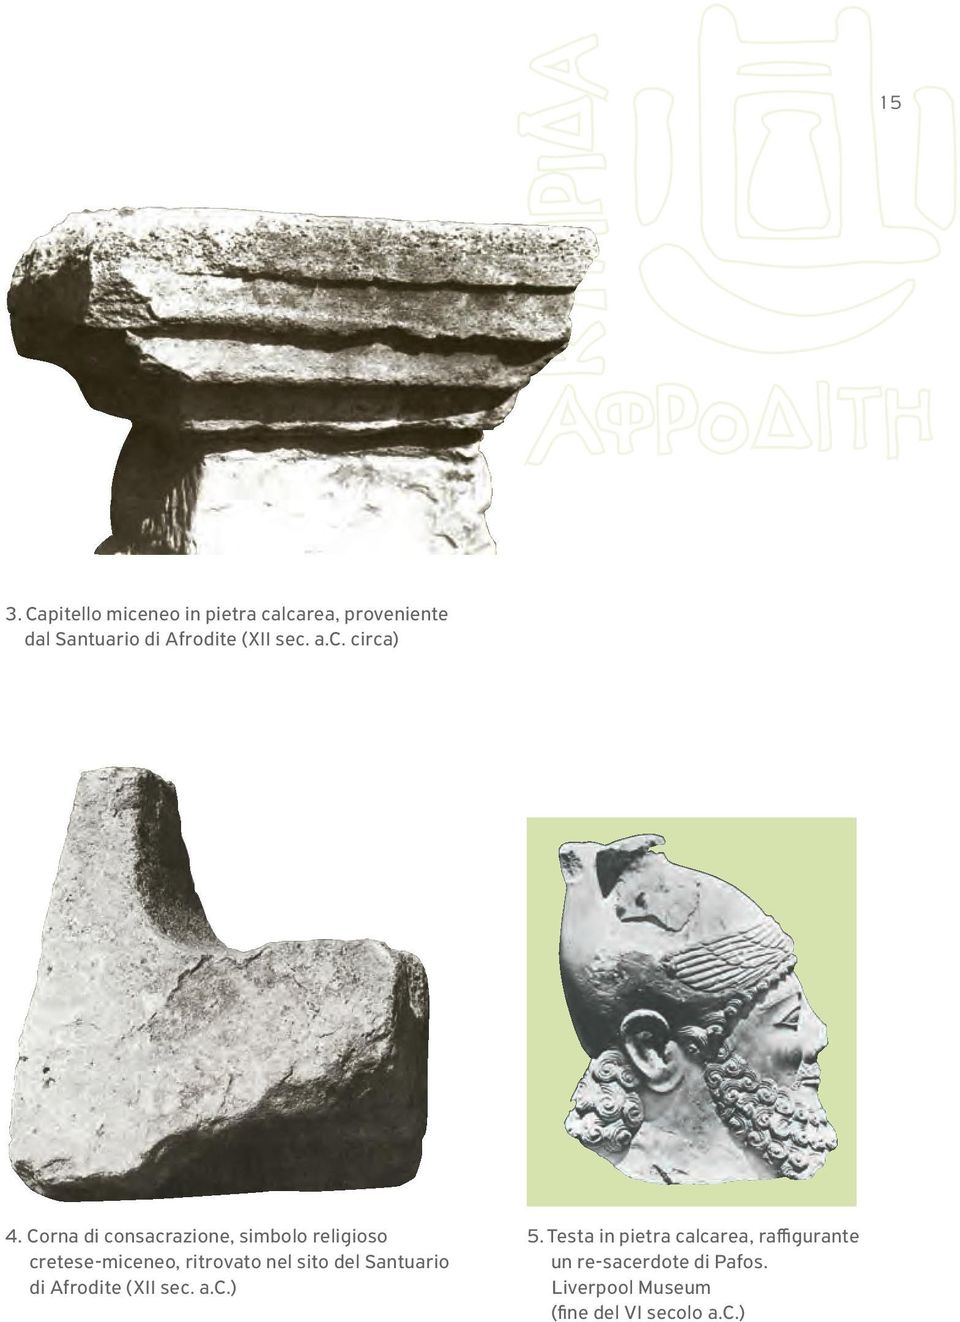 Corna di consacrazione, simbolo religioso cretese-miceneo, ritrovato nel sito del